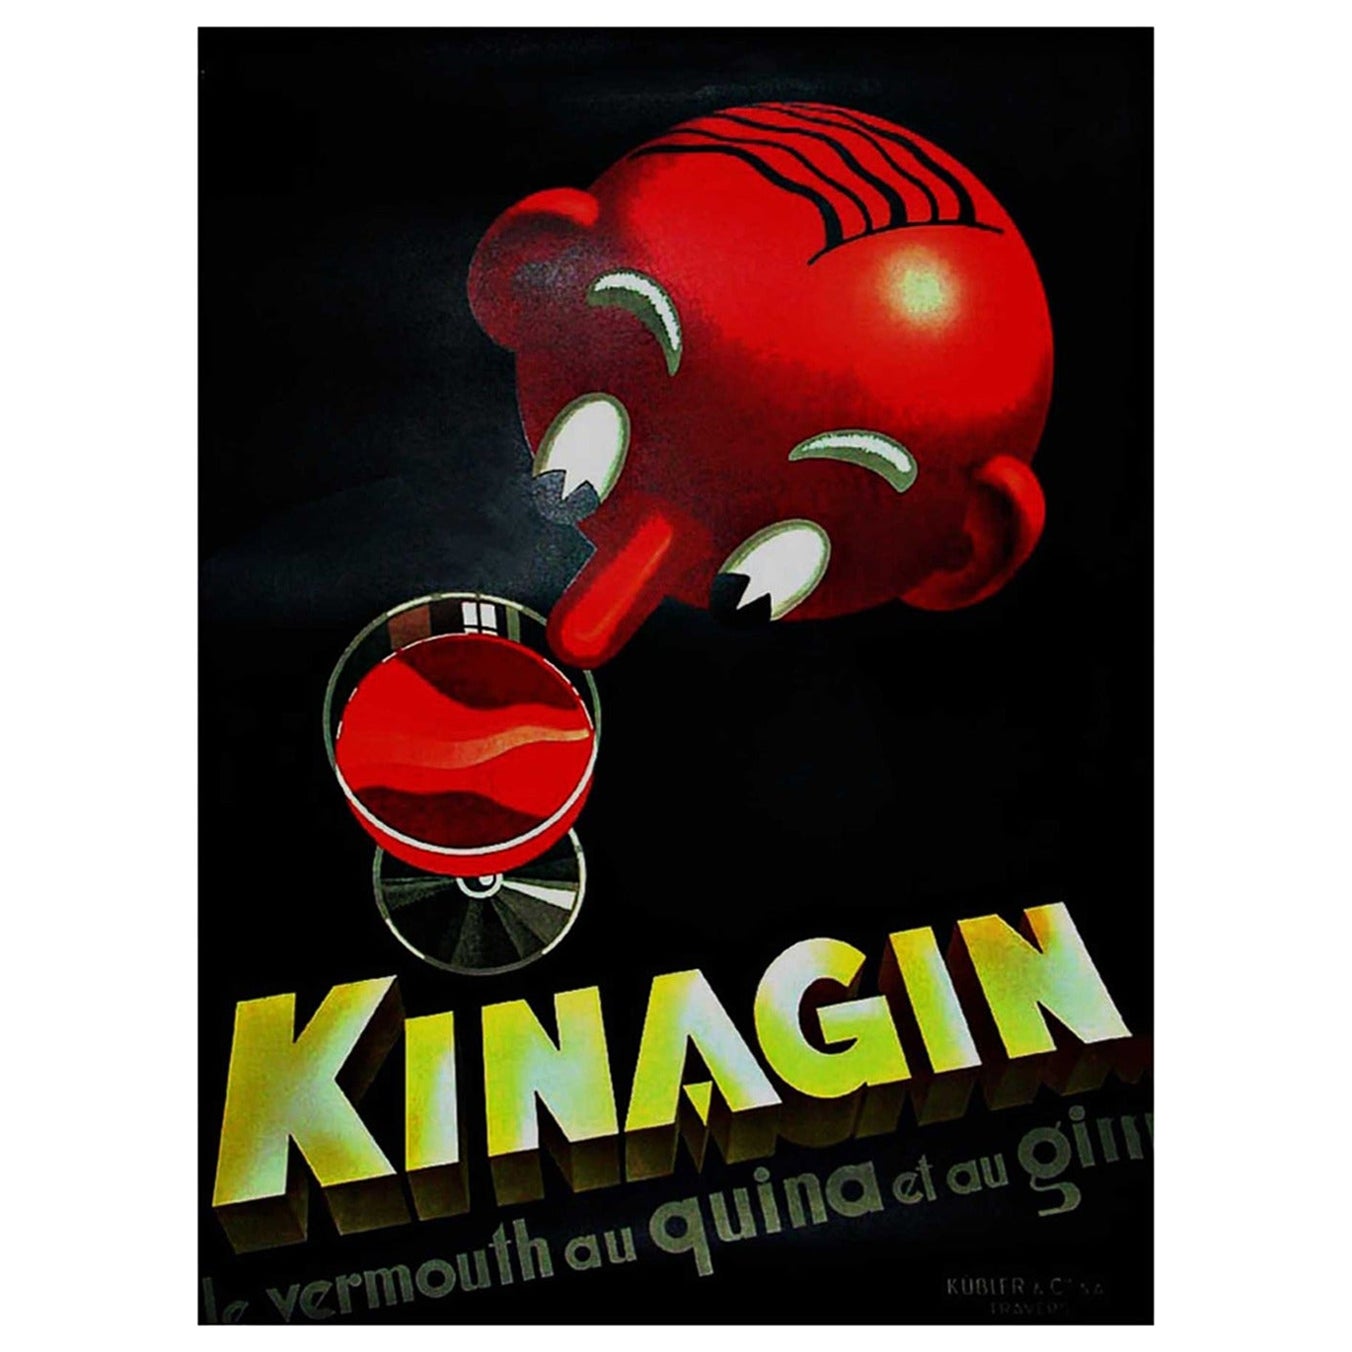 Affiche rétro originale de Kinagin pour une liqueur, 1930